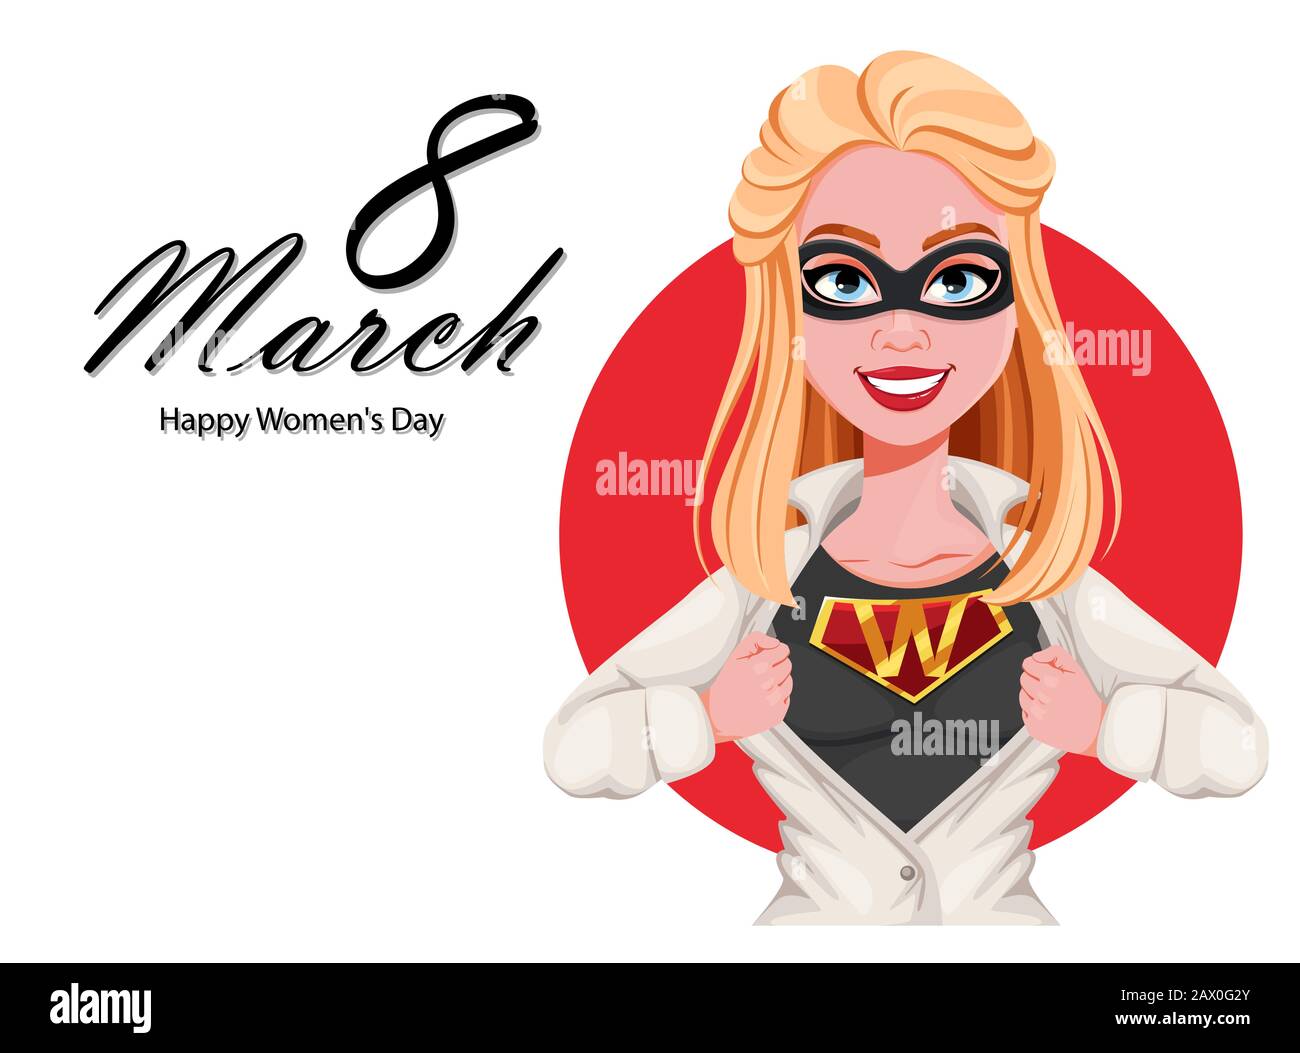 Glückwunschkarte Für Den Frauentag. Superhelden-Zeichentrickfigur der Frau. Vektor-Darstellung des Lagerbestands Stock Vektor